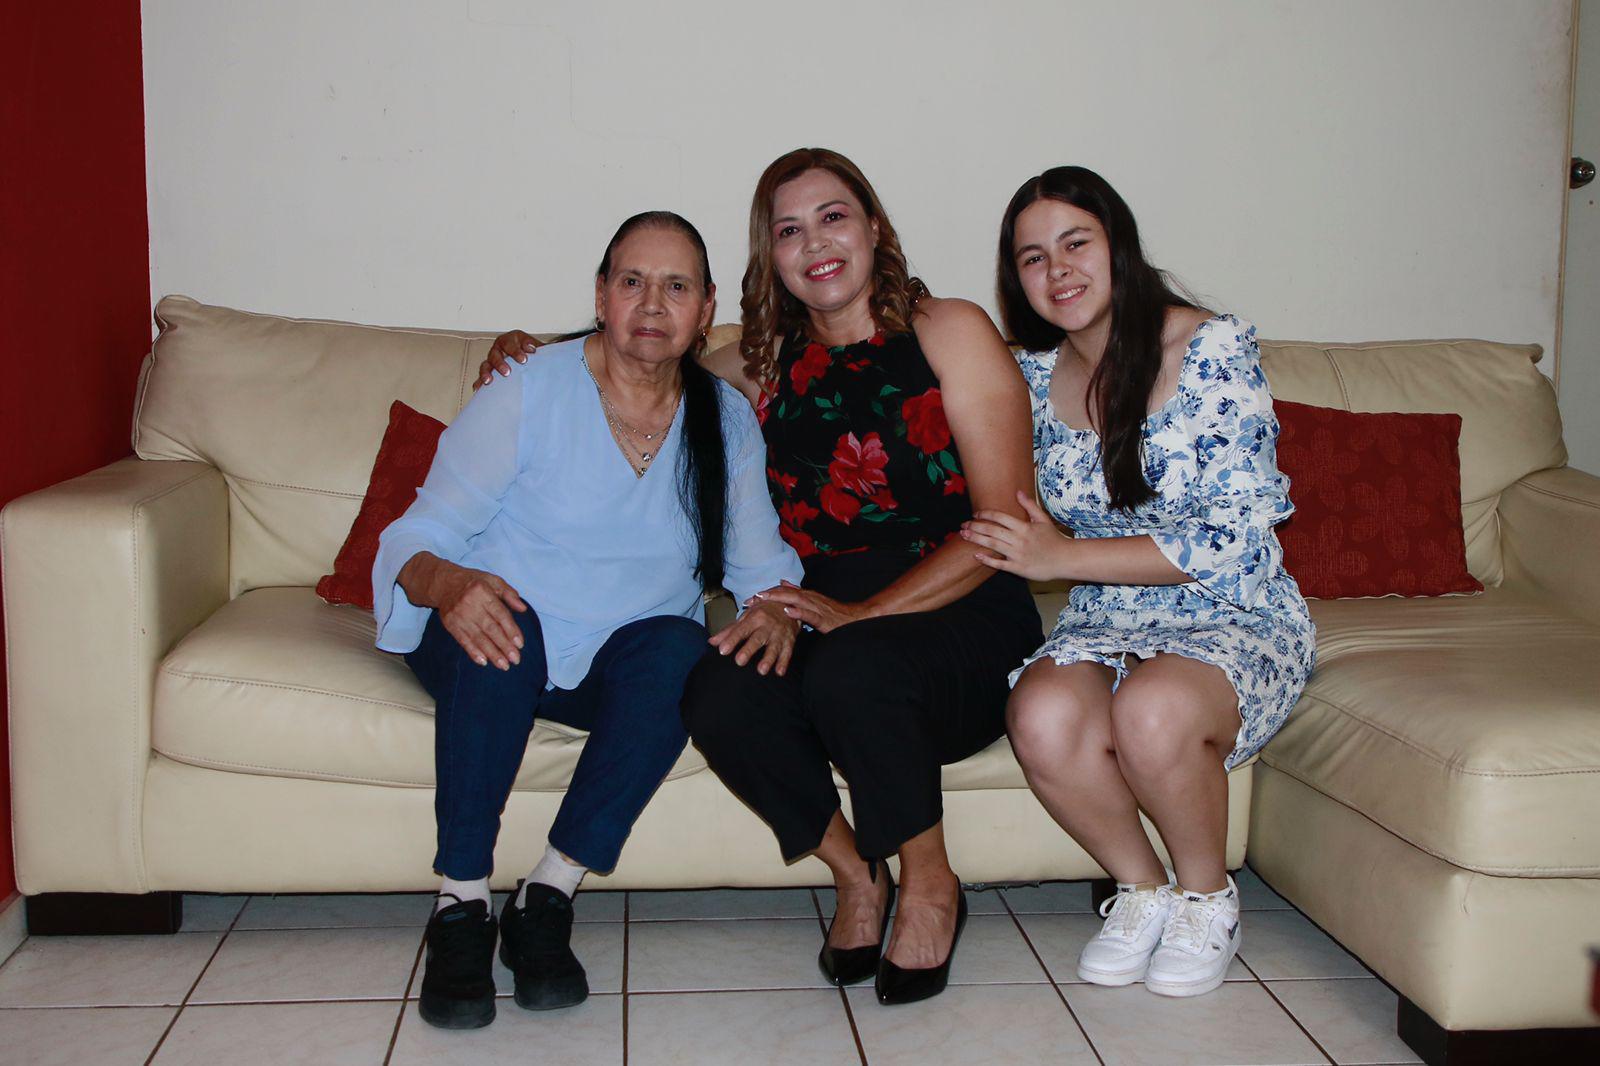 $!Hilda Gaxiola Álvarez rodeada por su madre y su hija Hilda Fernanda.